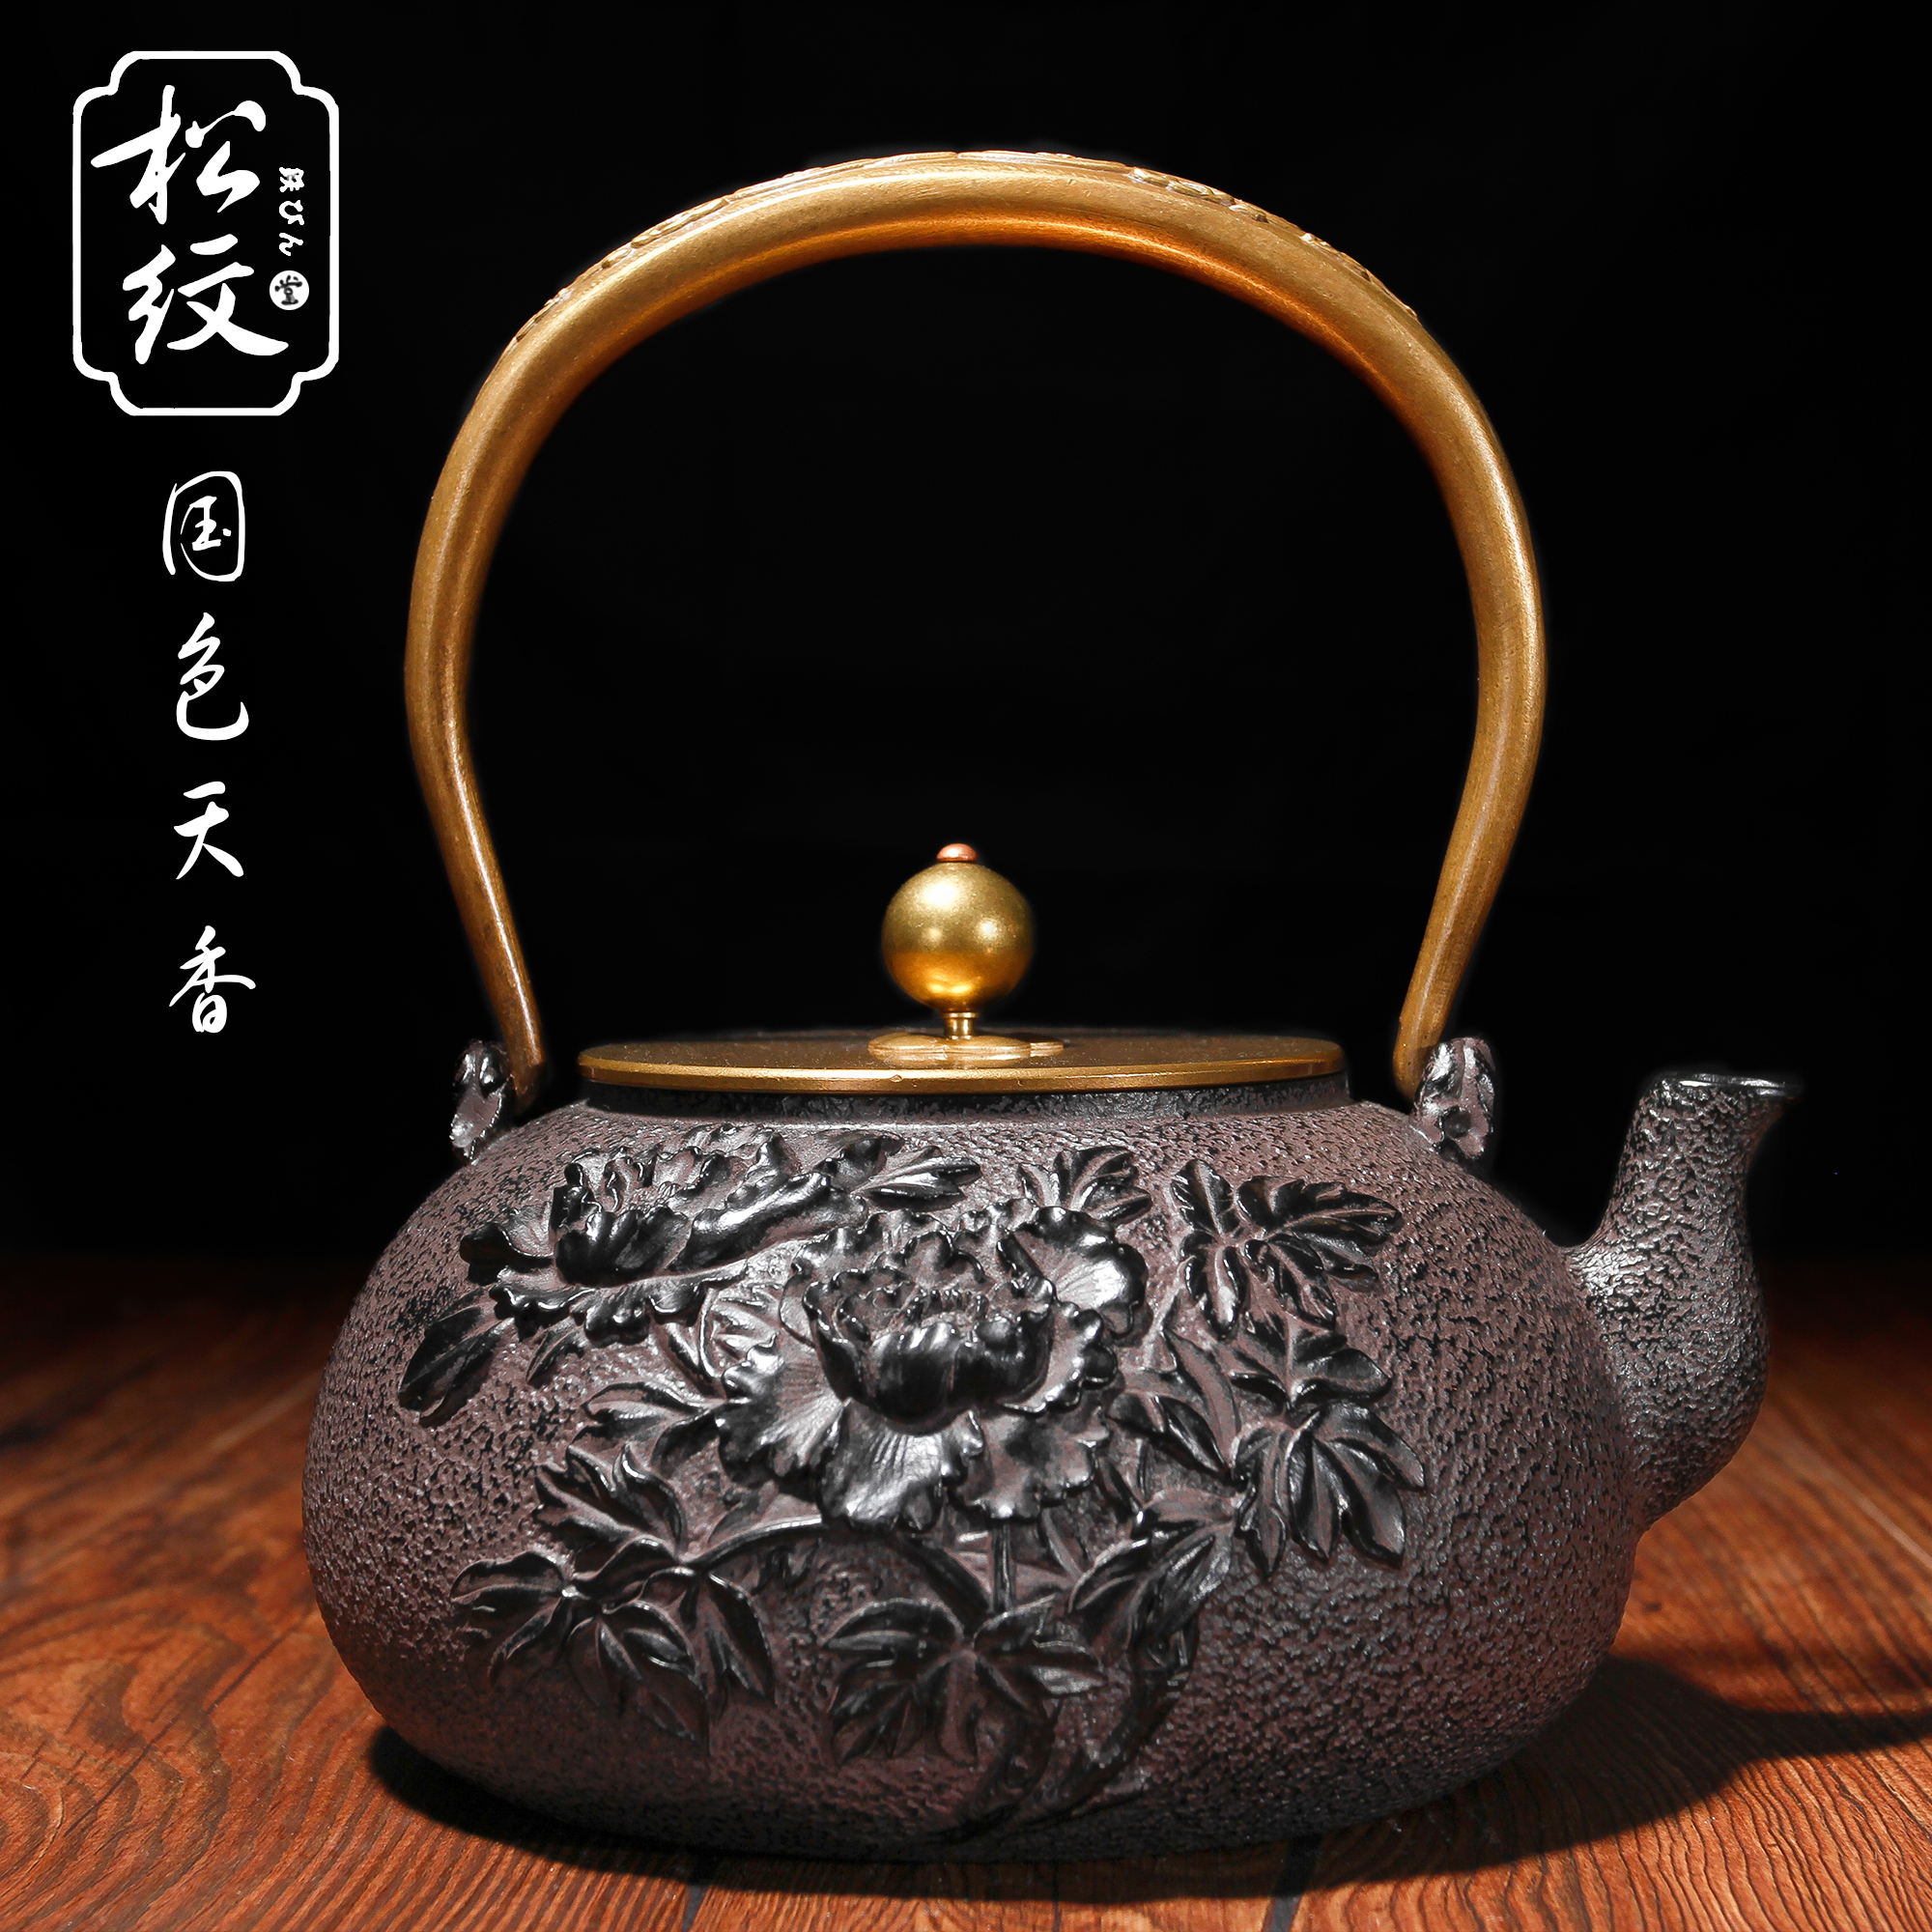 松纹堂正品出口日本老铁壶无涂层铸铁壶铜盖养身煮茶壶全手工包邮